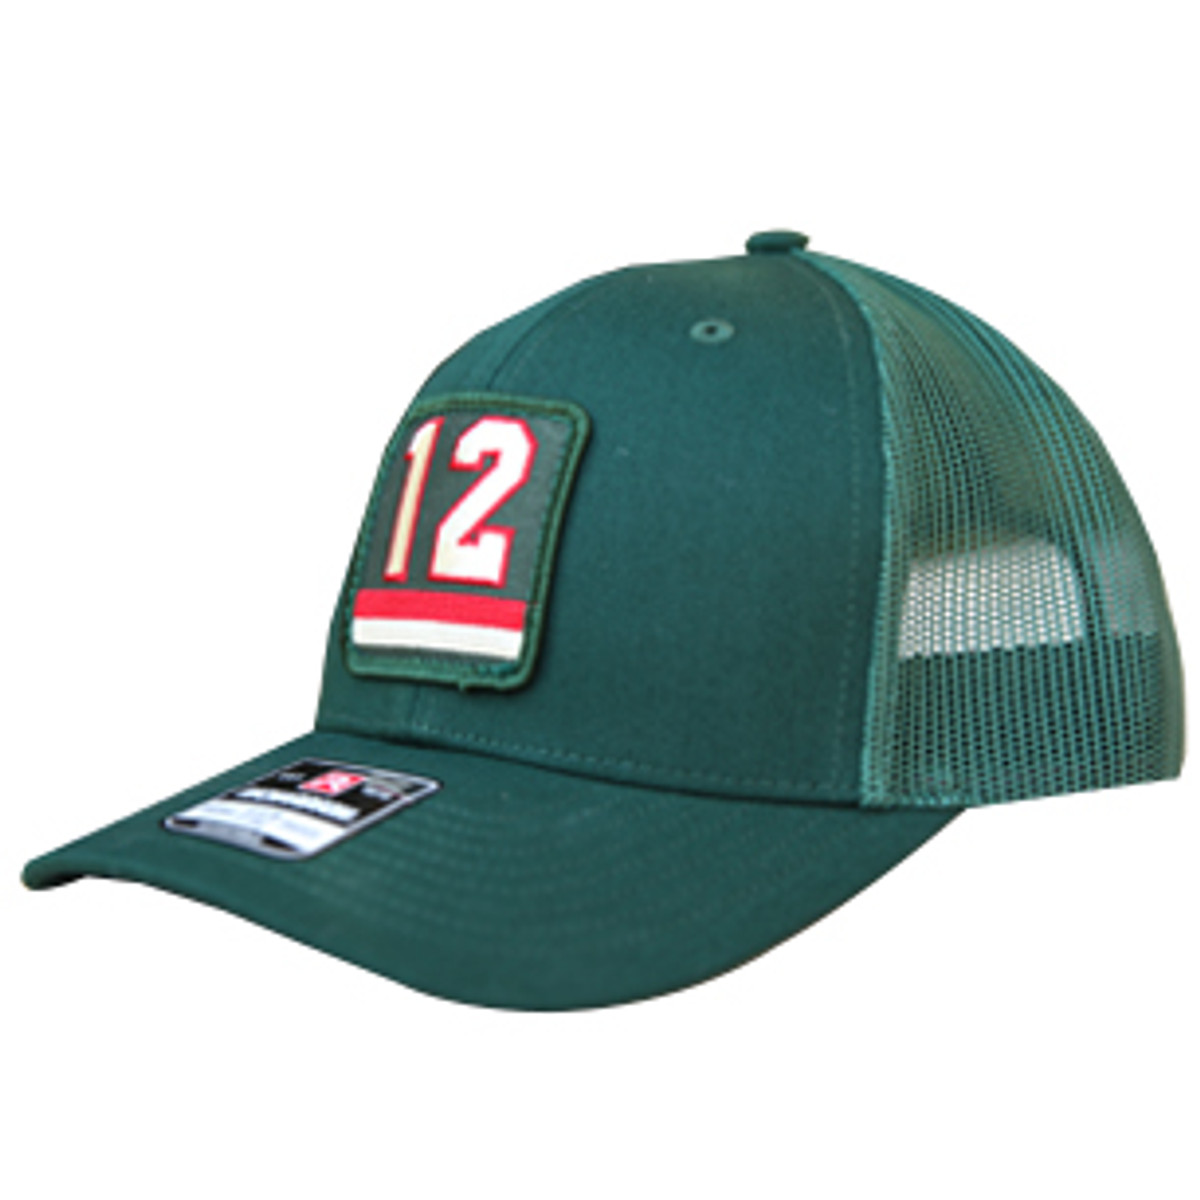 #12 Green Trucker Hat